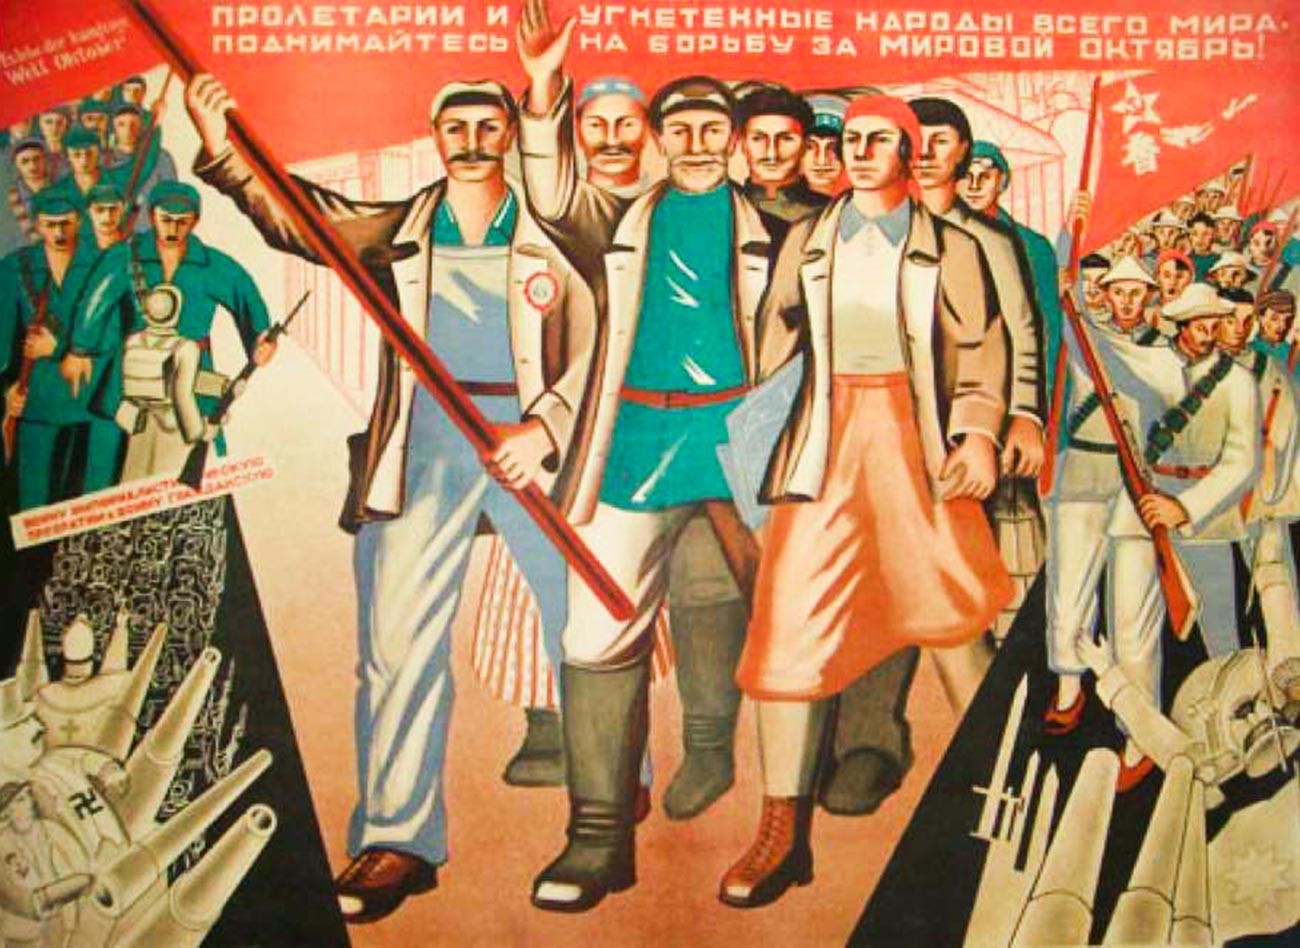 Организации 20 30 годов. Плакаты Всемирная Октябрьская Социалистическая революция. Советские революционные плакаты. Агитационные плакаты 1920 х годов. Пролетариат плакаты.